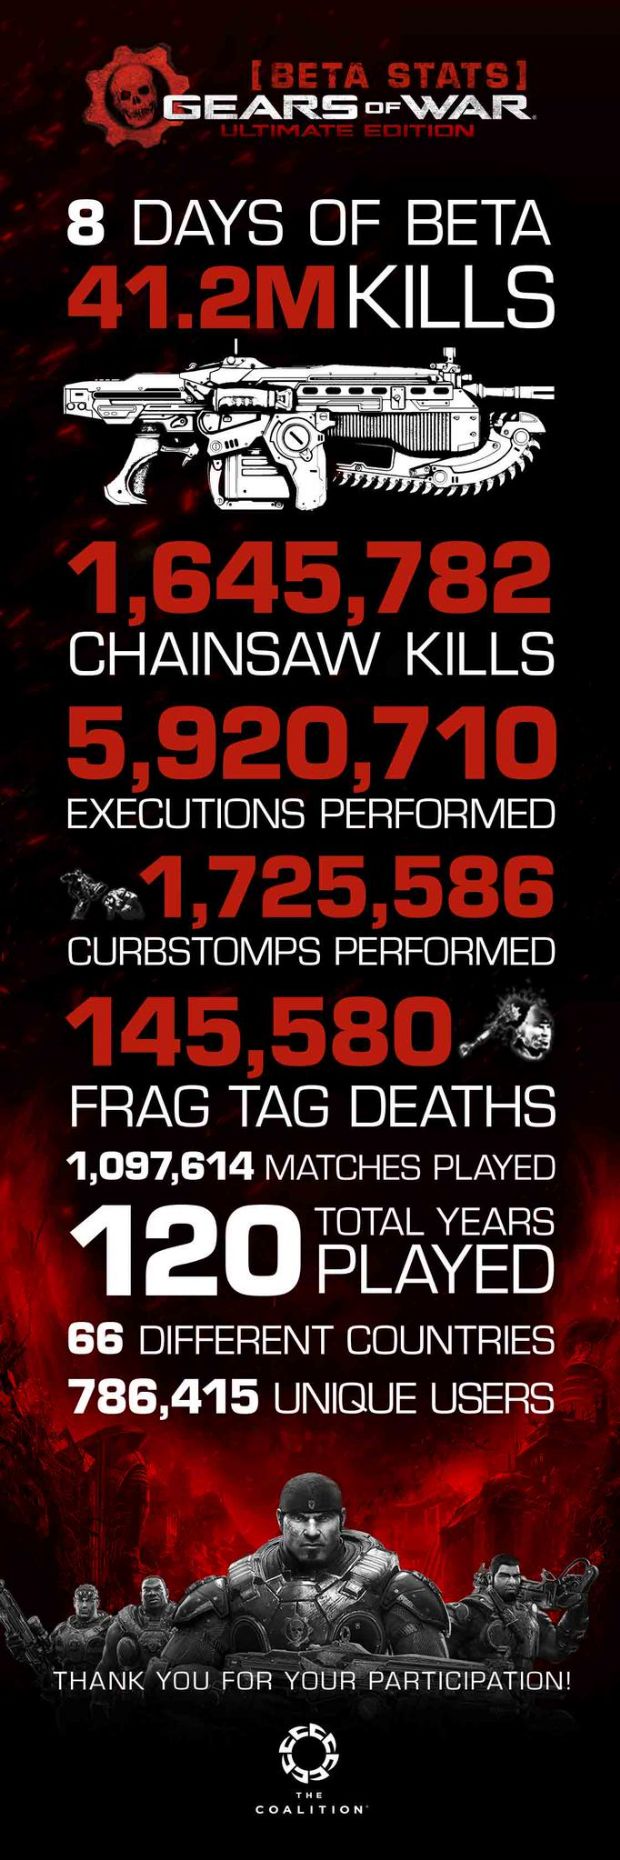 Gears of War Ultimate Edition'ın betasından uçuk rakamlar geldi